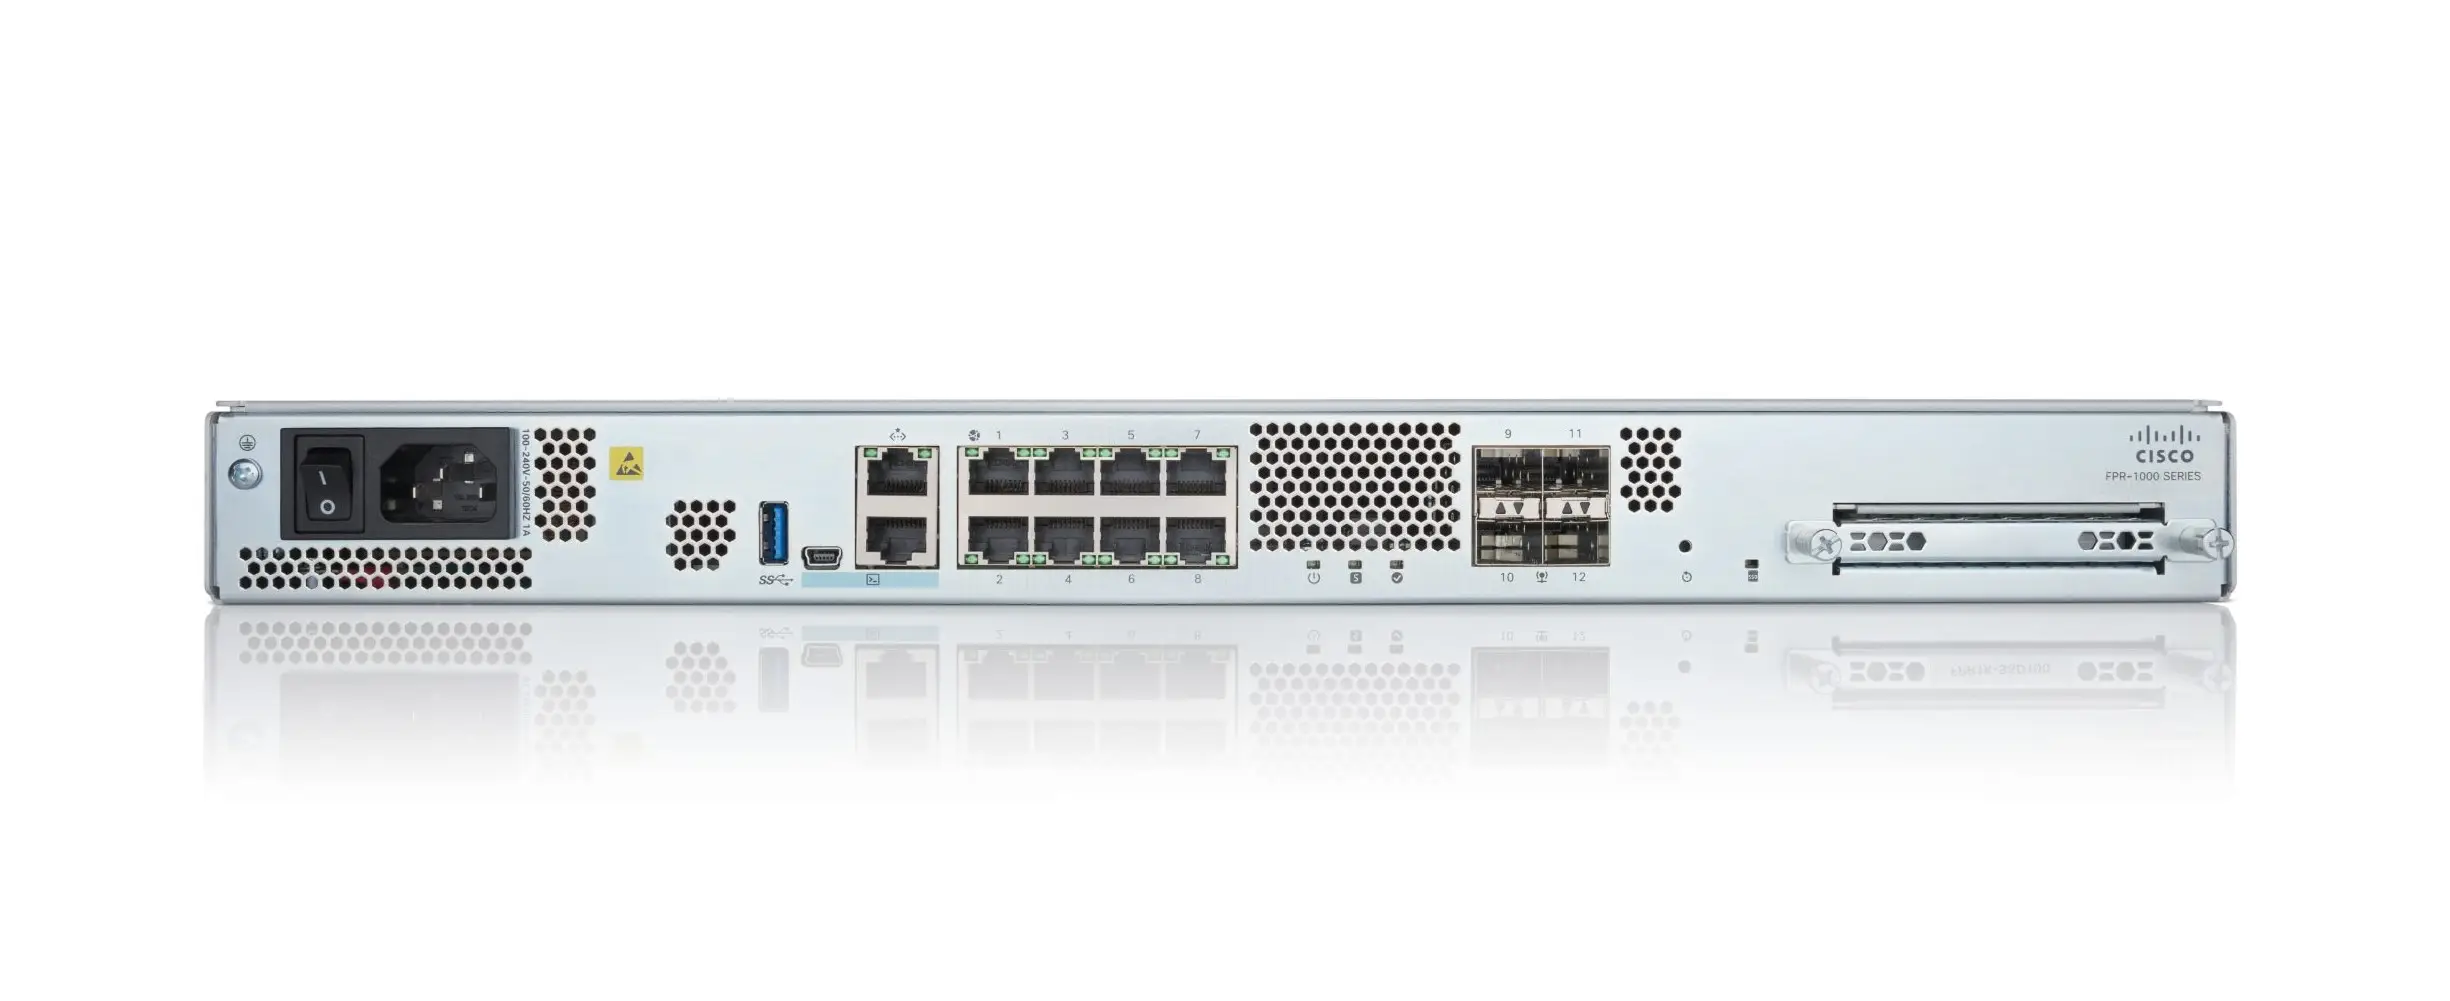 Cisco FPR1120-NGFW-K9 Firepower 1120 - Hardware Firewall